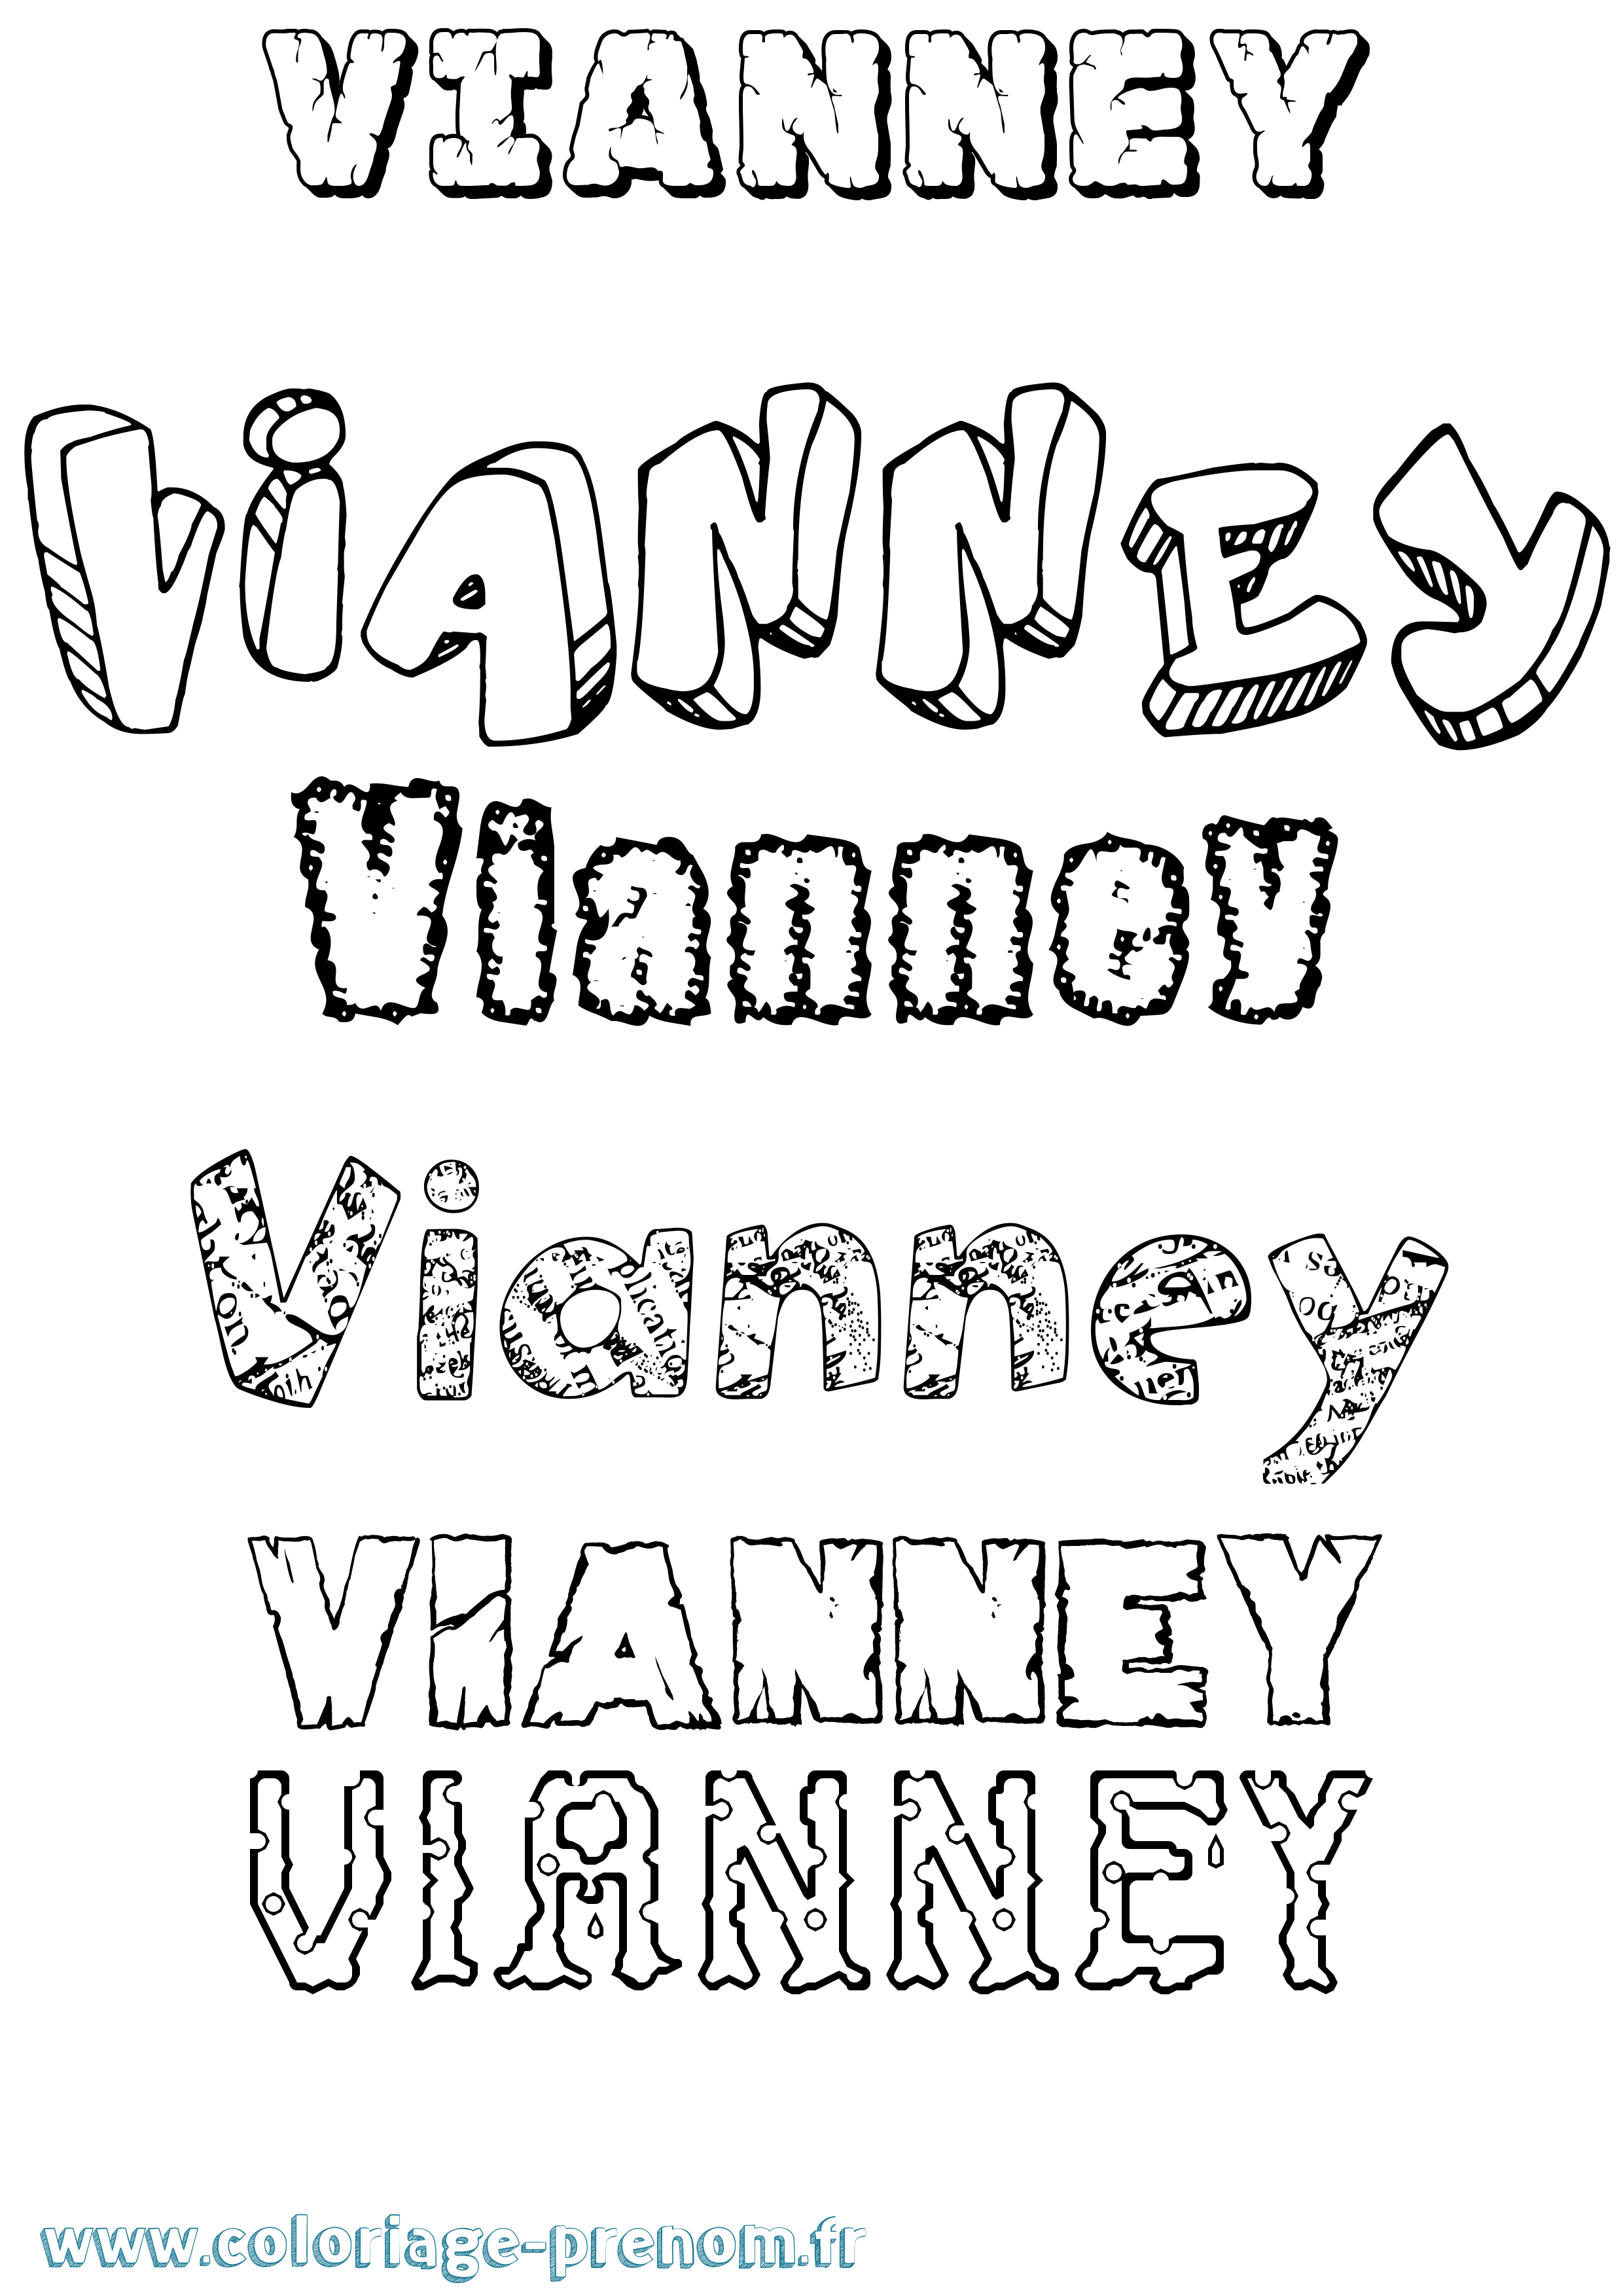 Coloriage prénom Vianney Destructuré